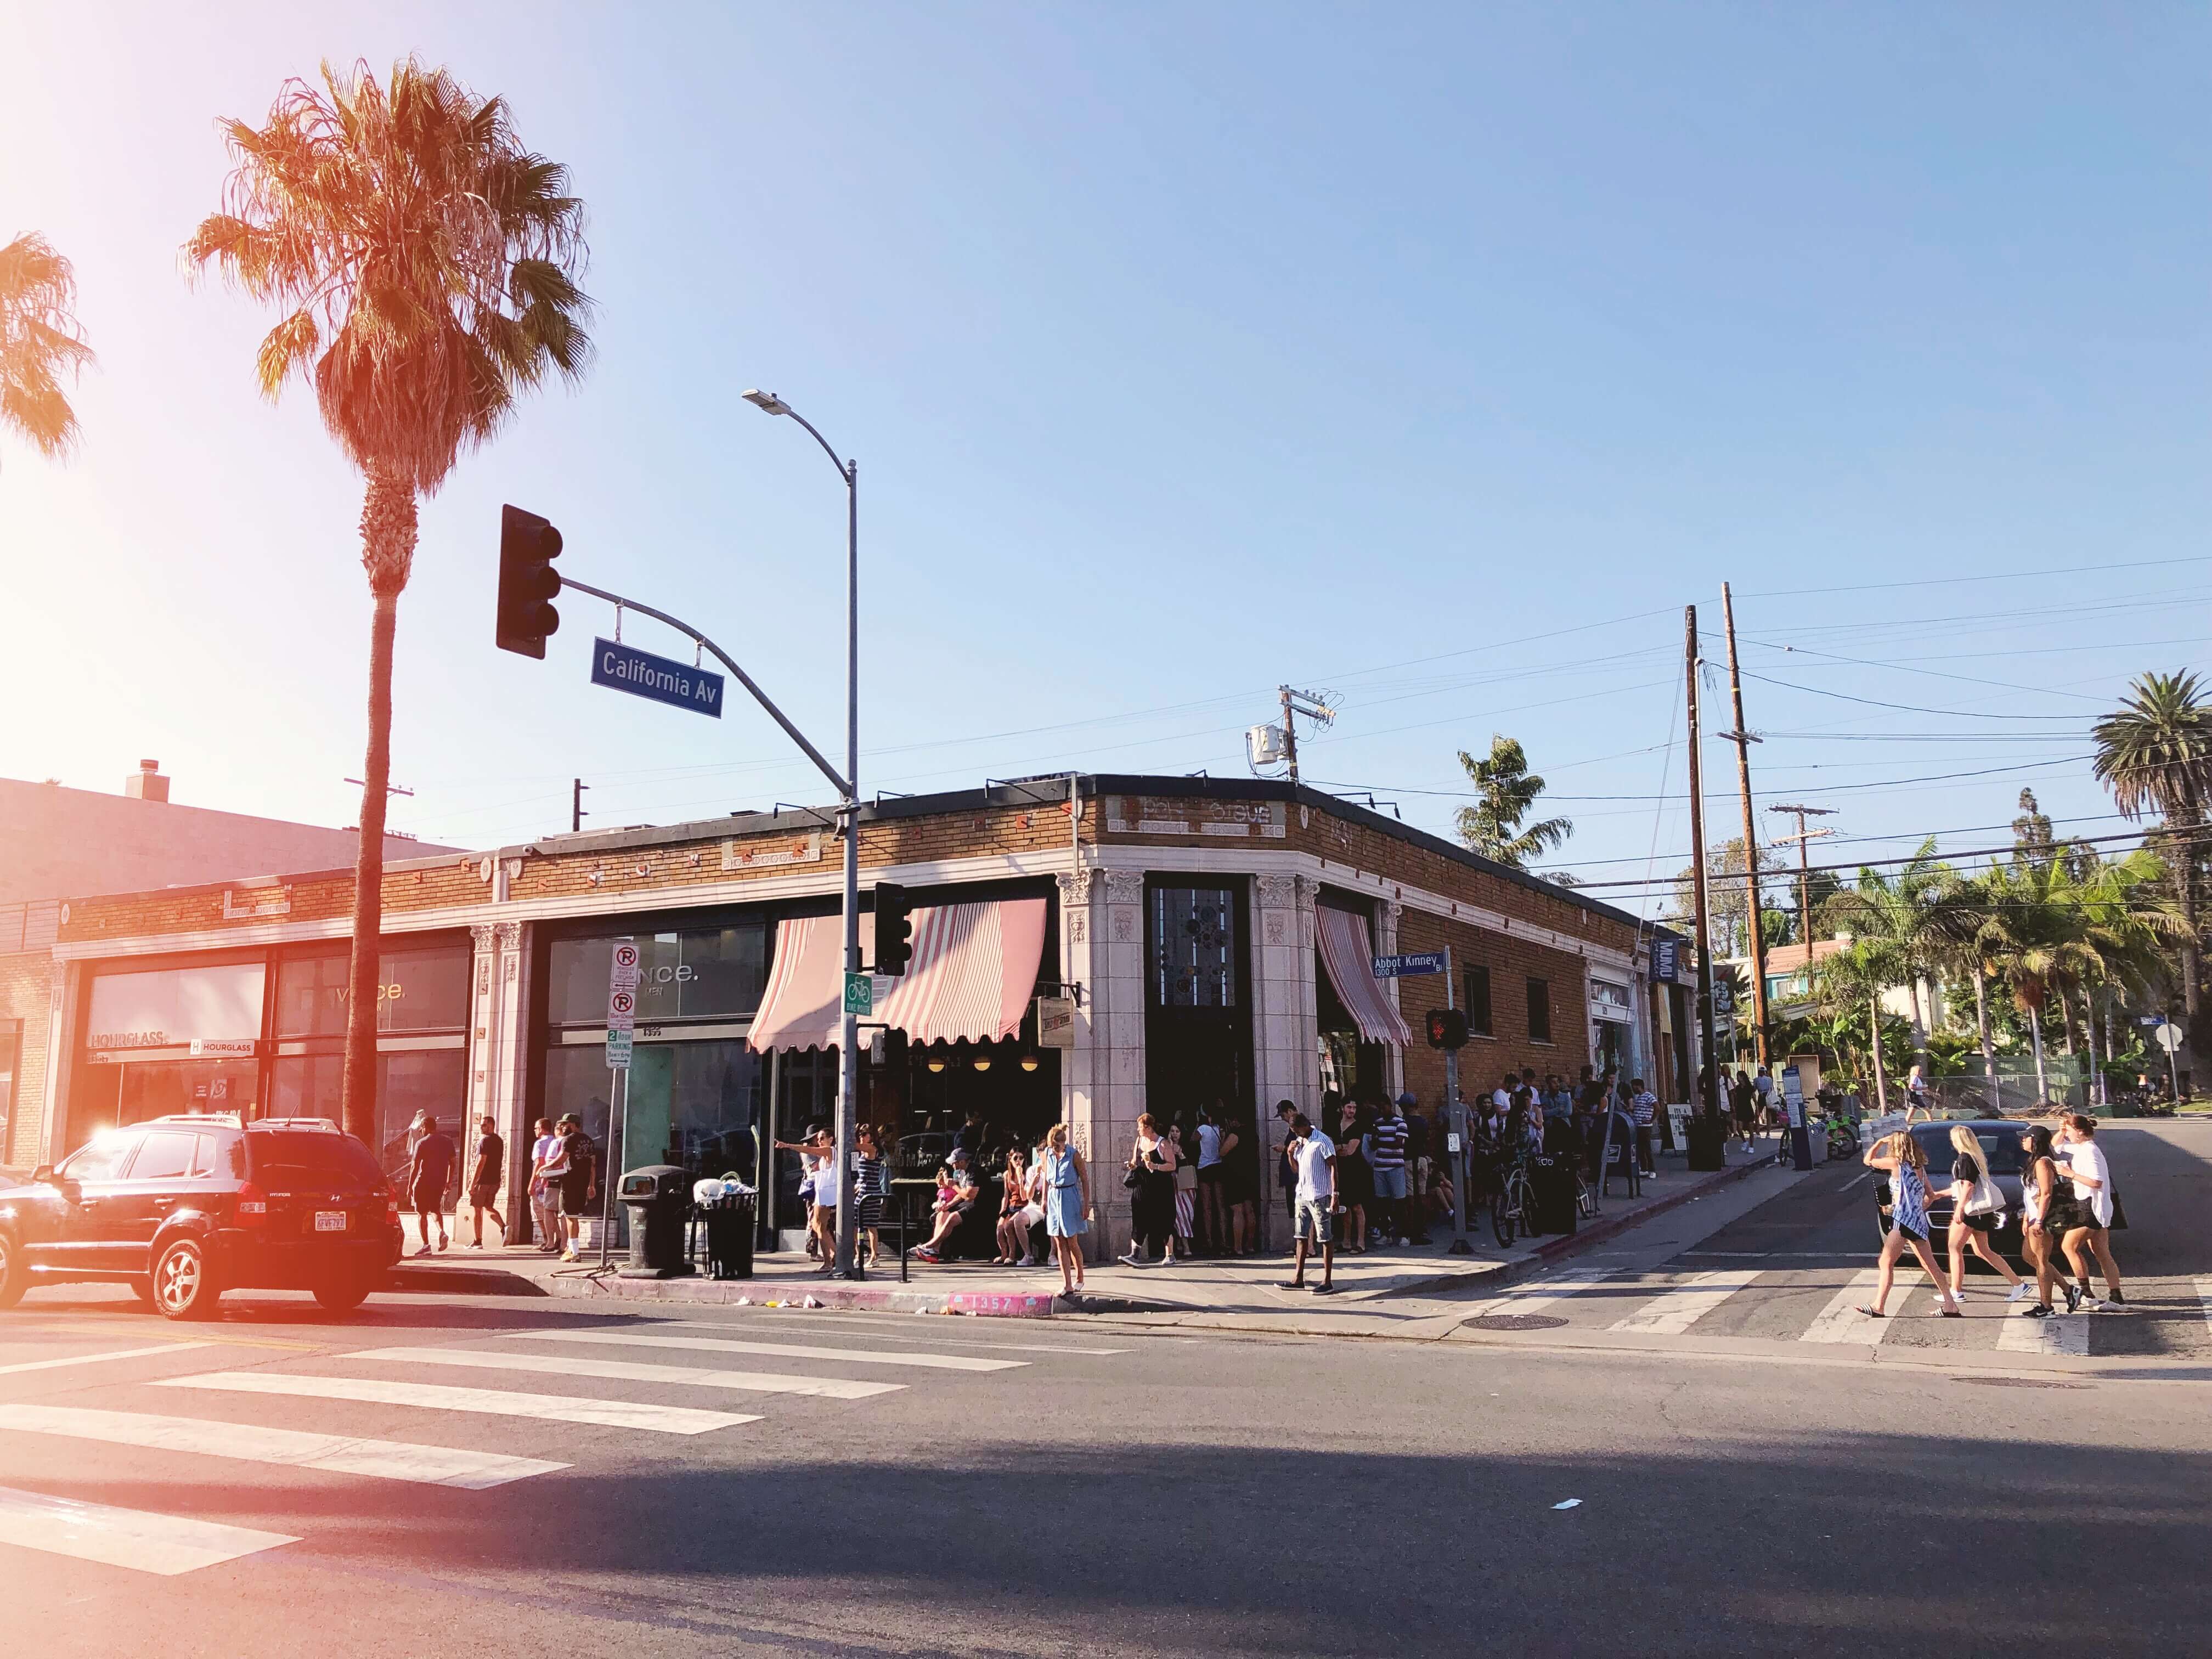 Abbot Kinney Boulevard 🎬 Mes 10 endroits préférés à Los Angeles. Carte des quartiers Los Angeles, sur Goodie Mood, le blog Feel Good et Créativité #losAngeles #expatlife #changerdevie #venice #santaMonica #theGrove #beverlyHills